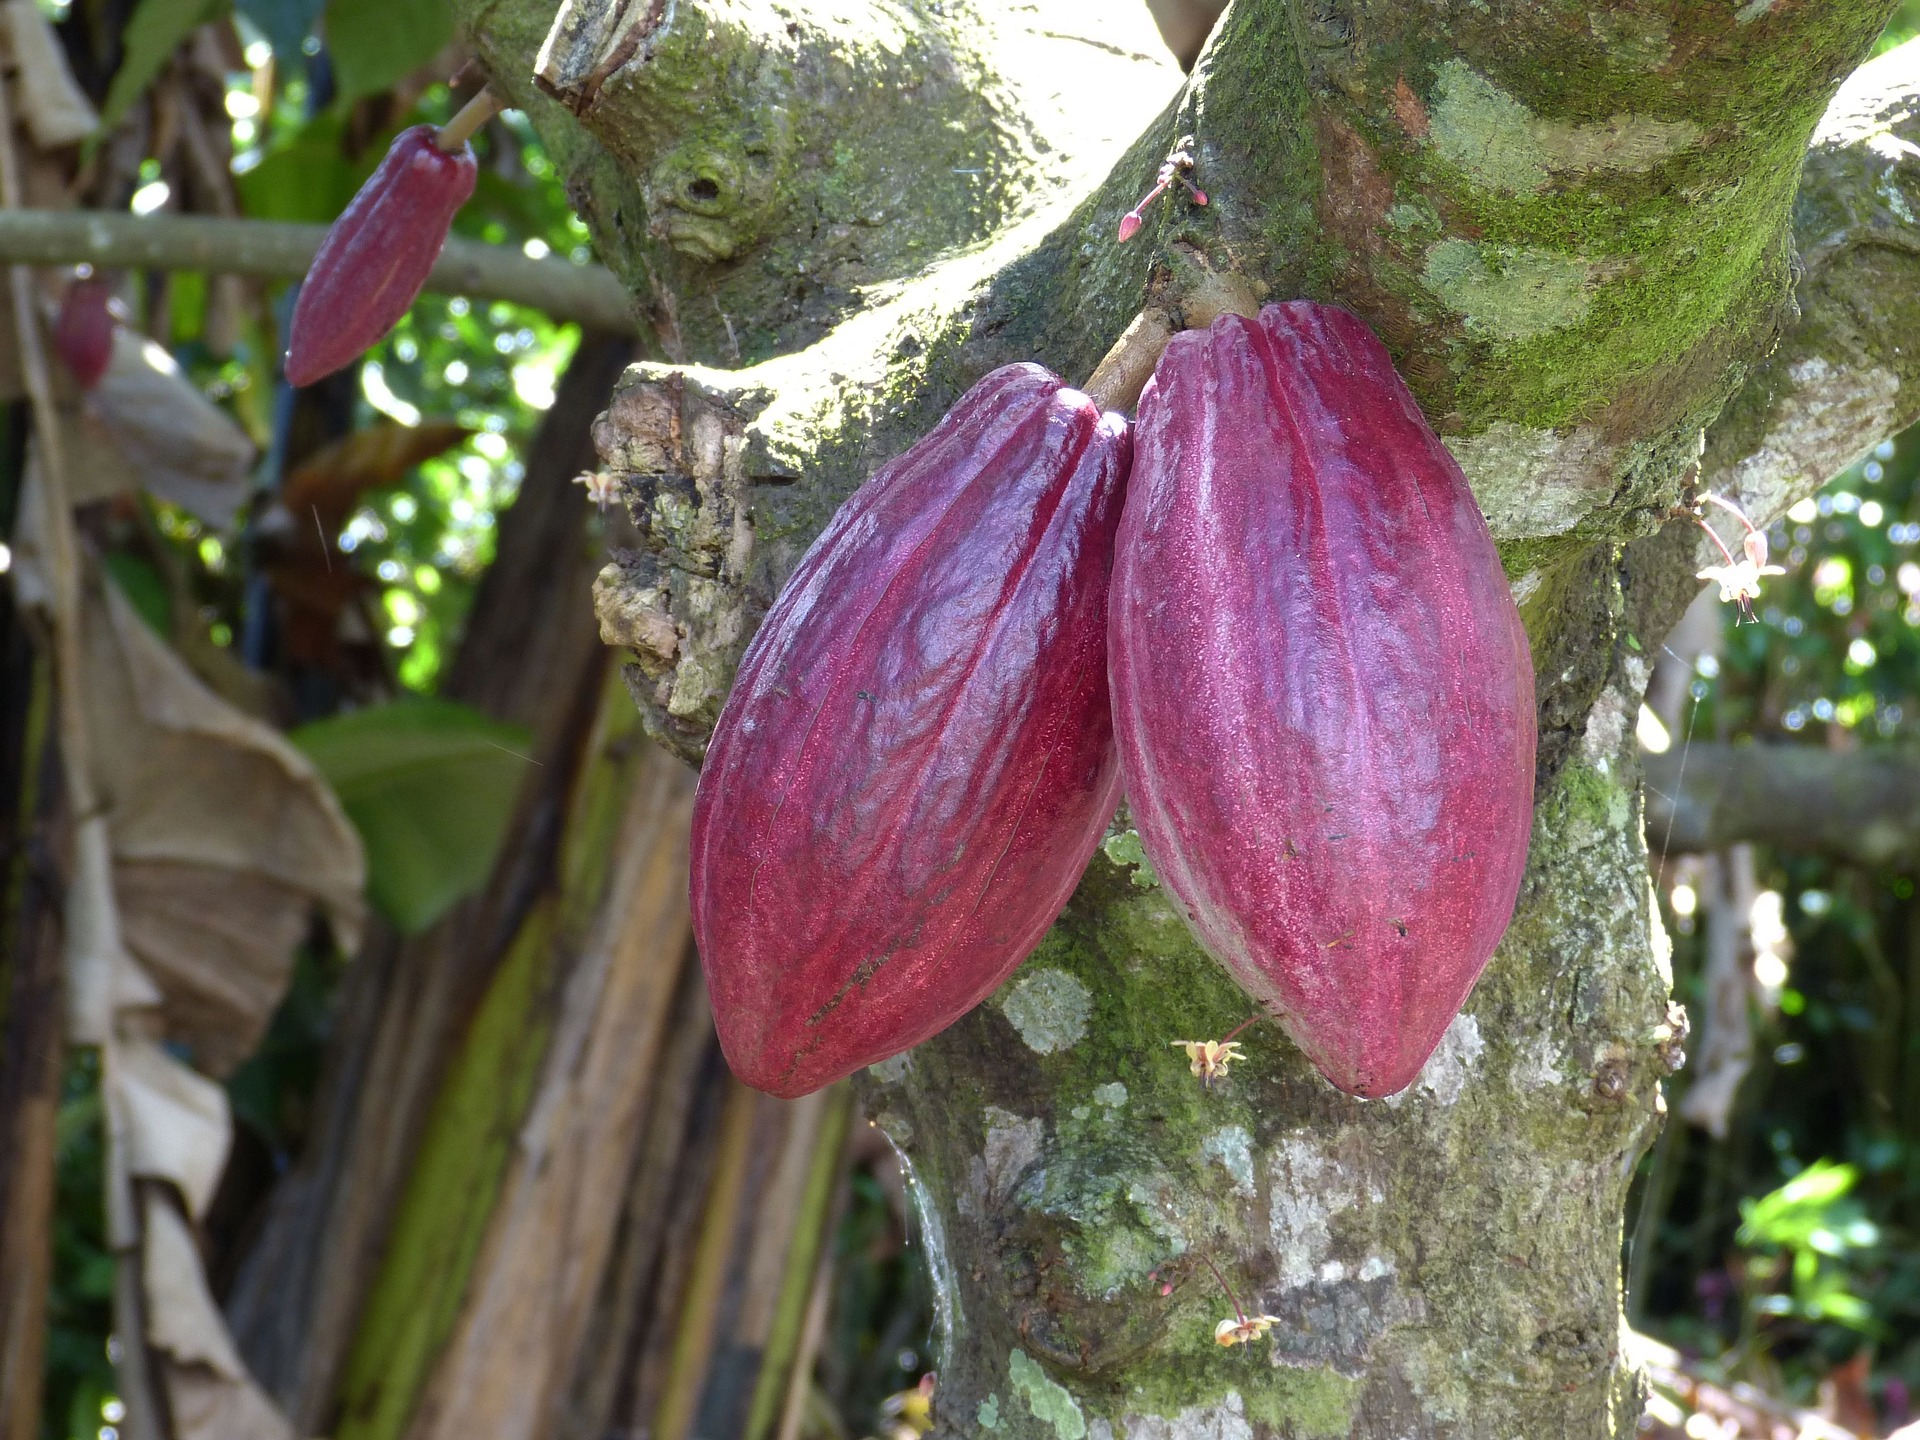 Cocoa tree in Costa Rica